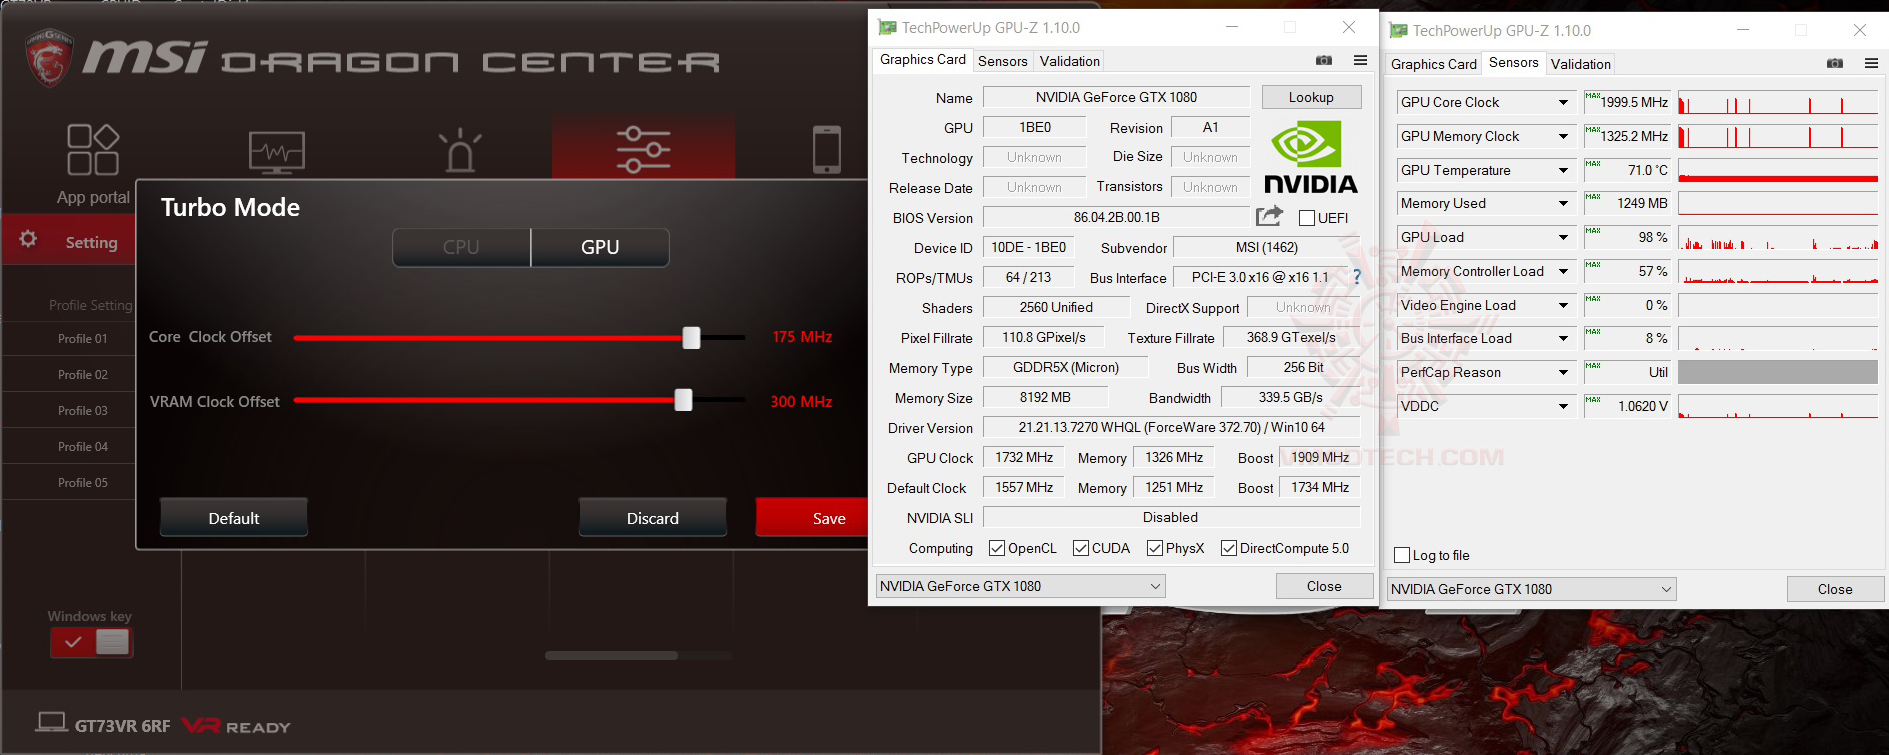 gpu maxx MSI GT73VR 6RF Titan Pro Review